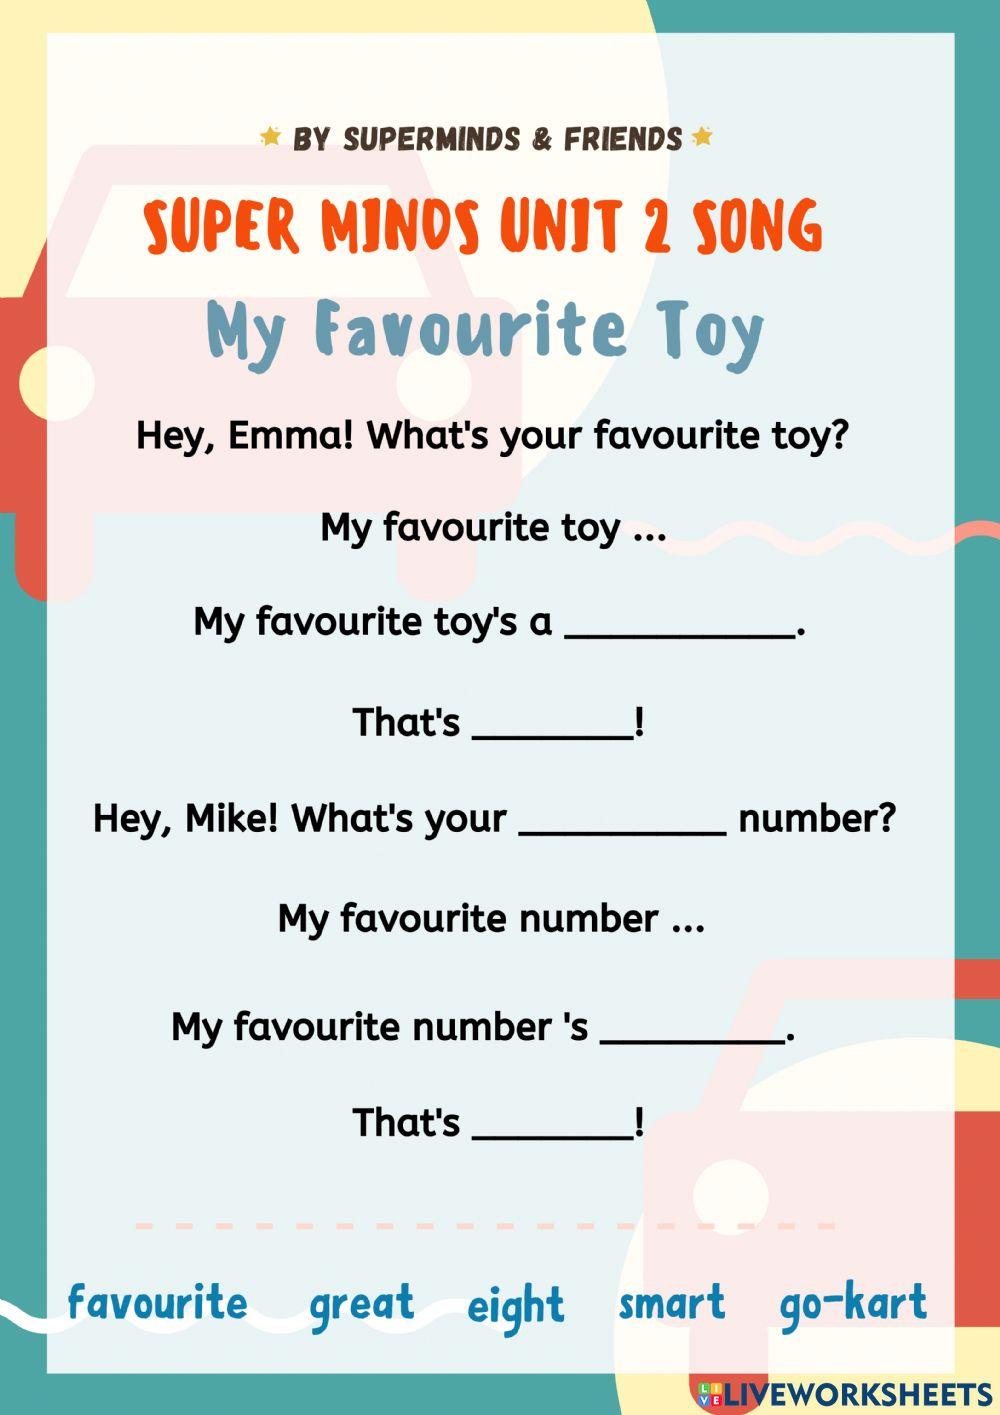 Super minds unit 2 song worksheet